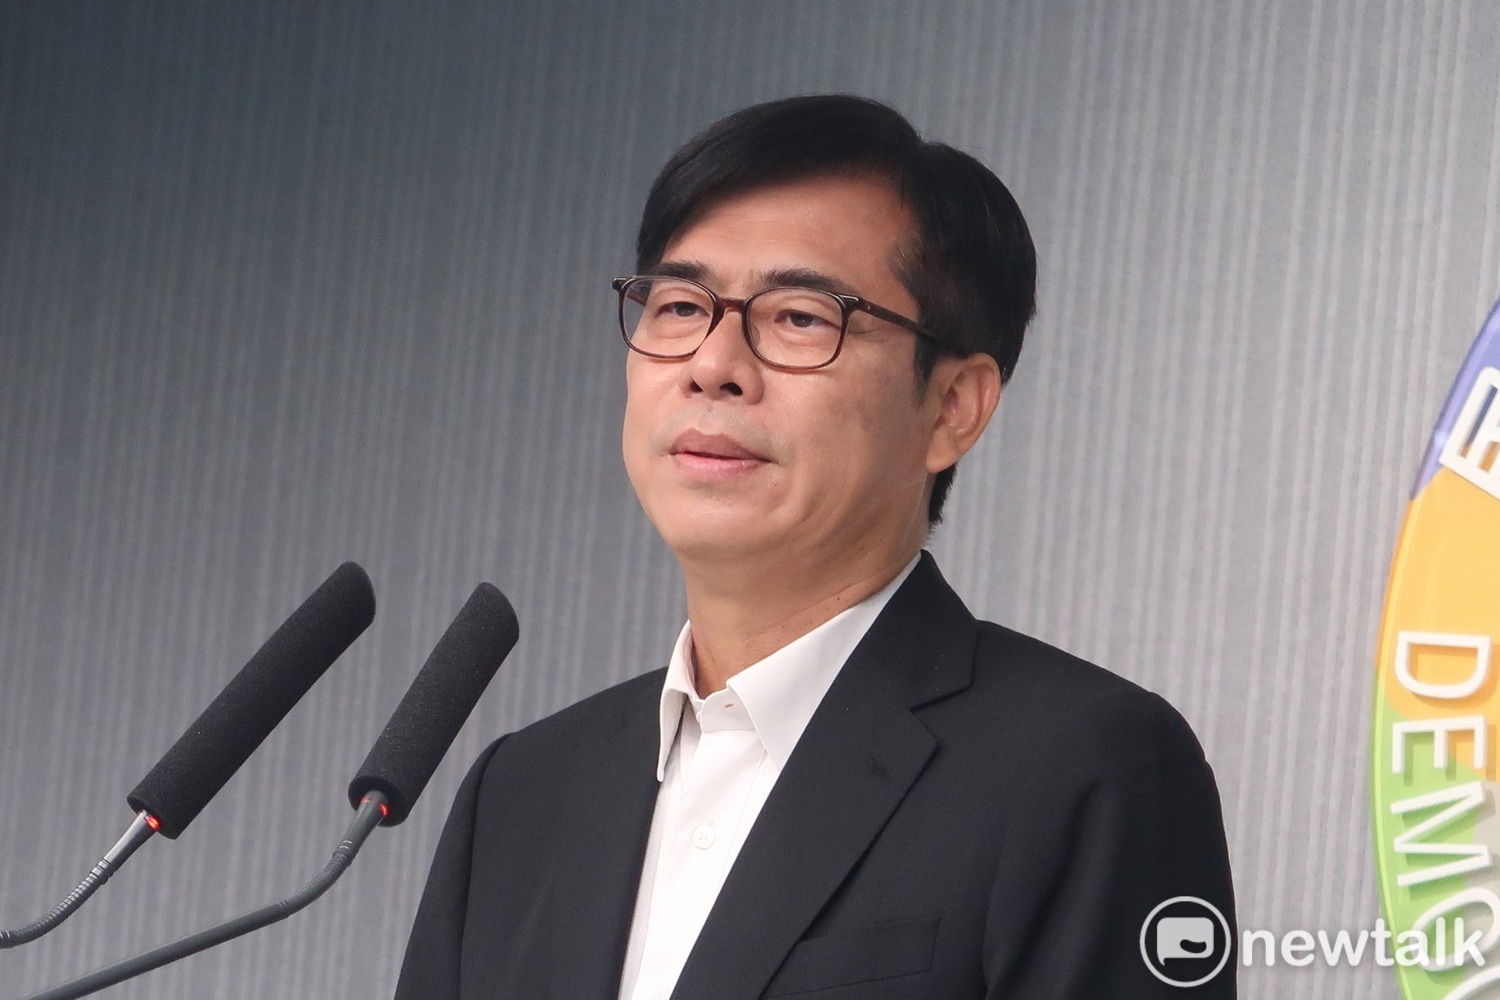 台南議長選舉黑金爭議 陳其邁語重心長訴求團結 | 政治 | Newtal